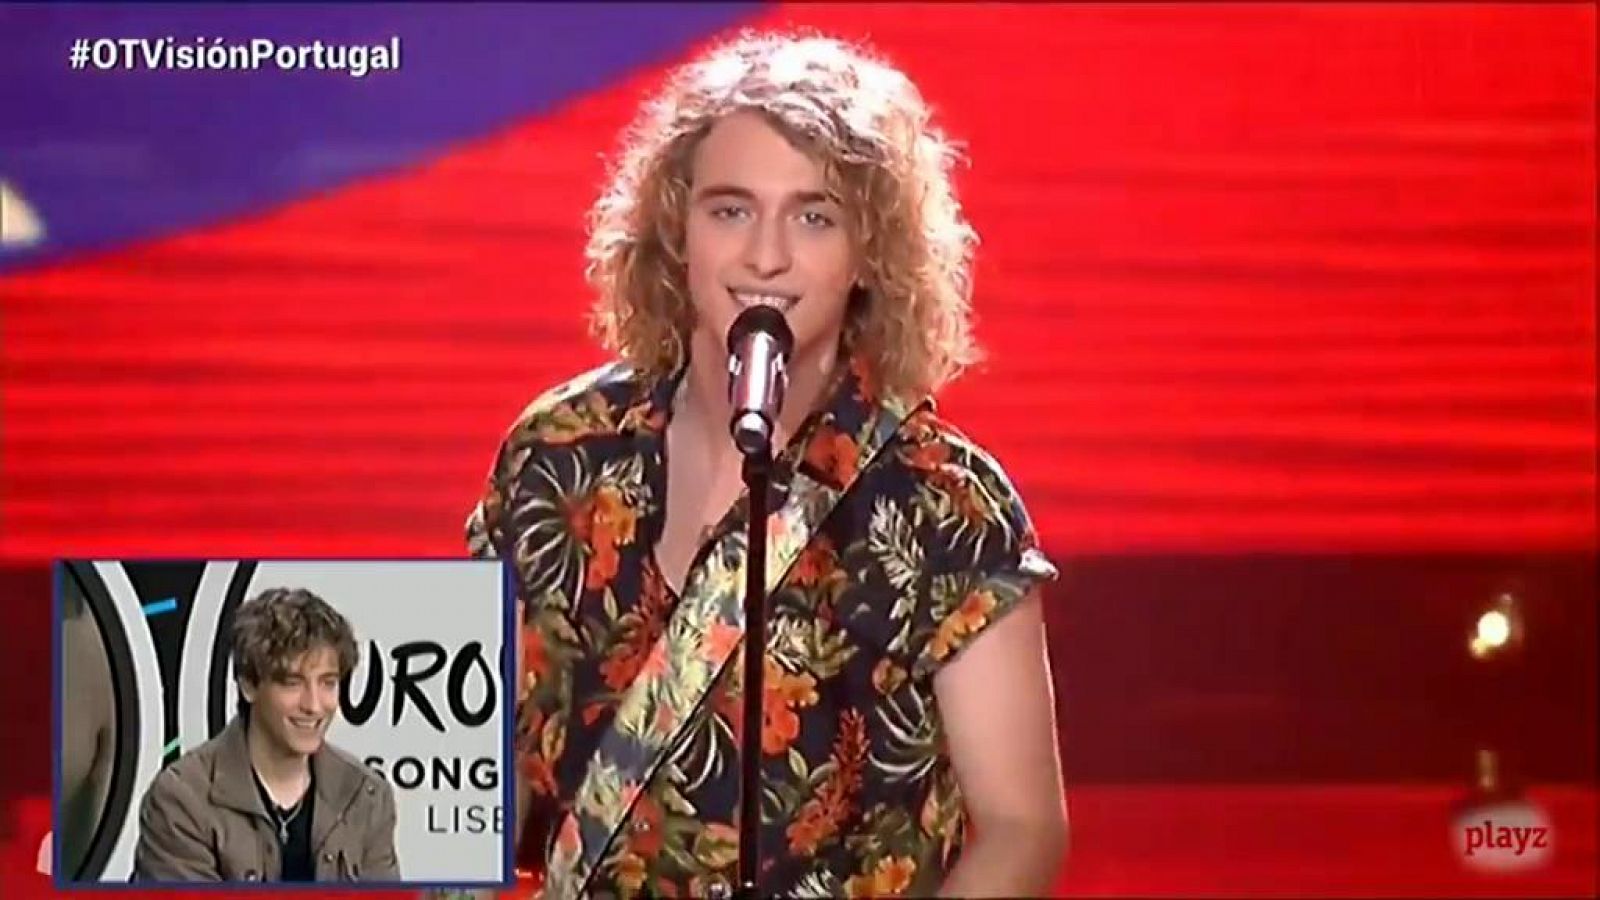 Eurovisión 2018: El video de Manuelesky: "Do it for you gallo' - OTVisión